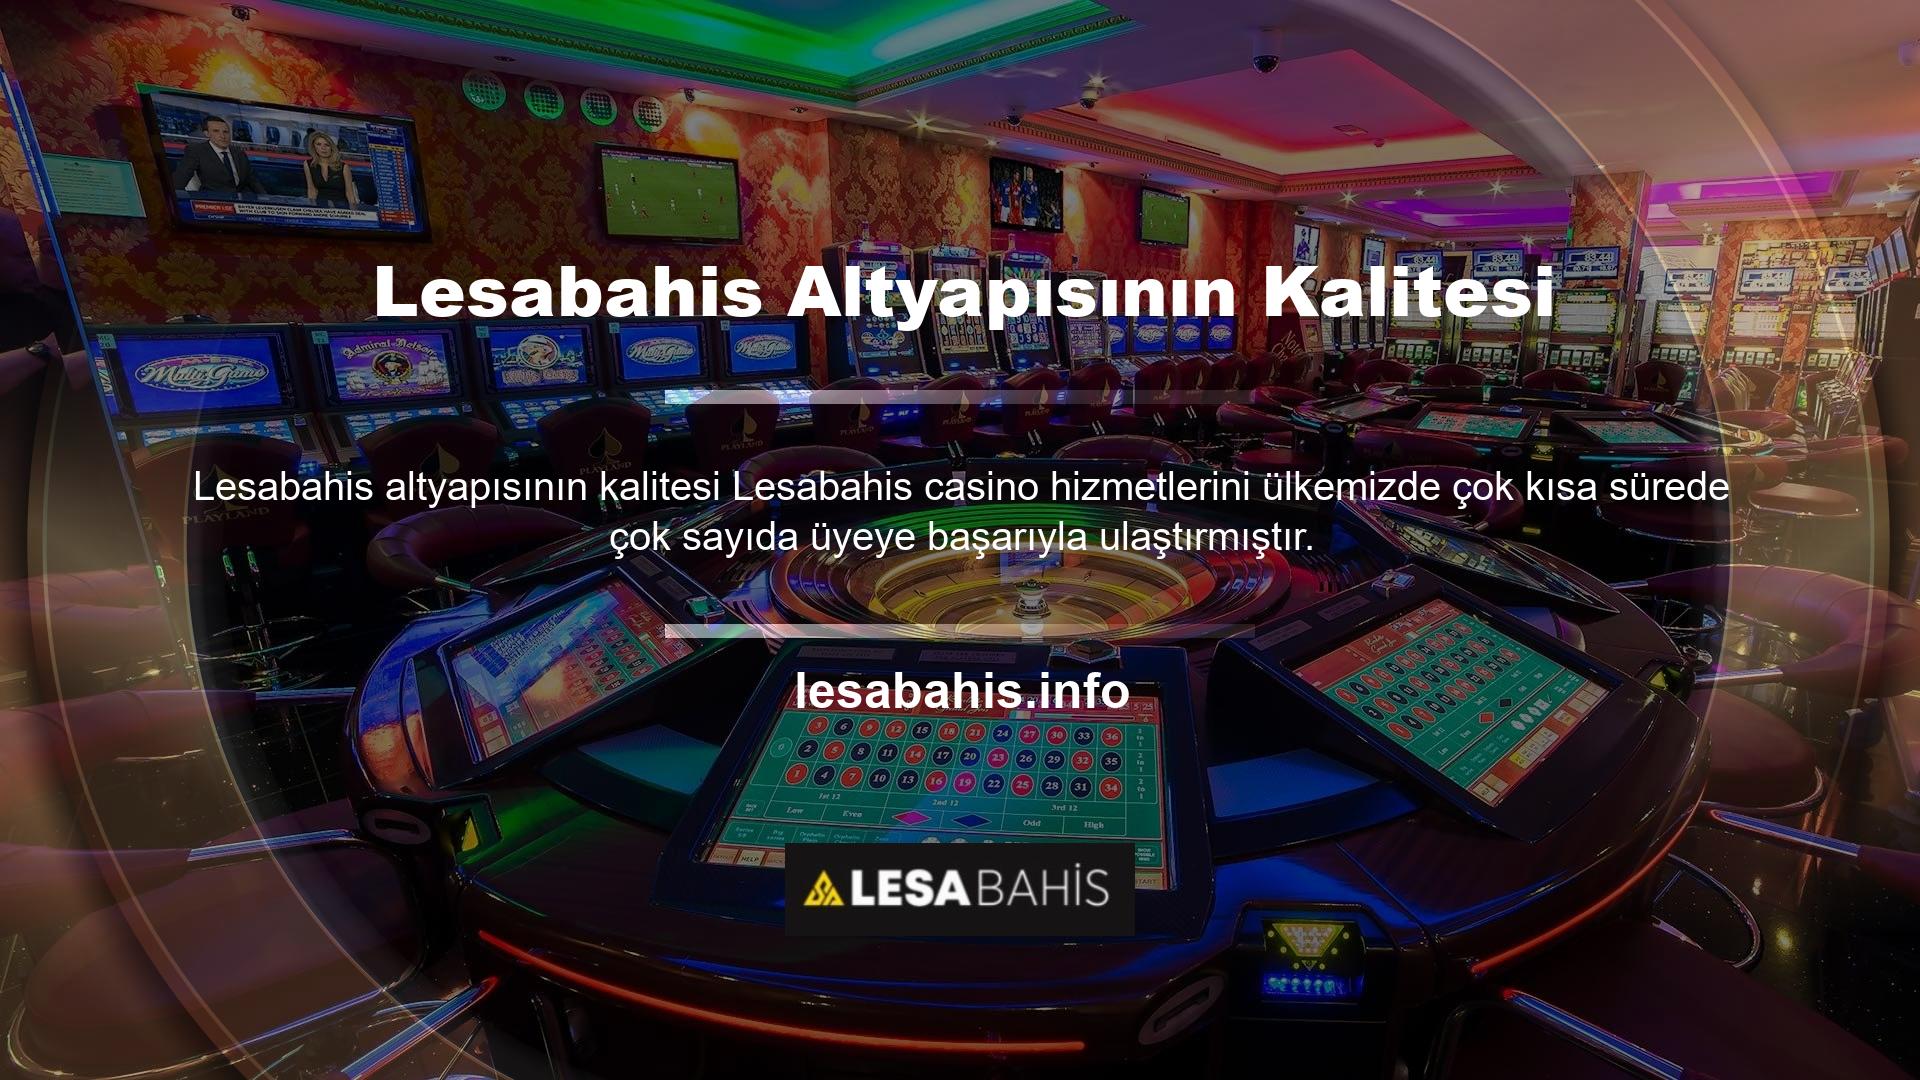 Lesabahis casino altyapısı için Canlı Bahis Ofisi'nin farklı proje firması ile anlaşması bulunmaktadır